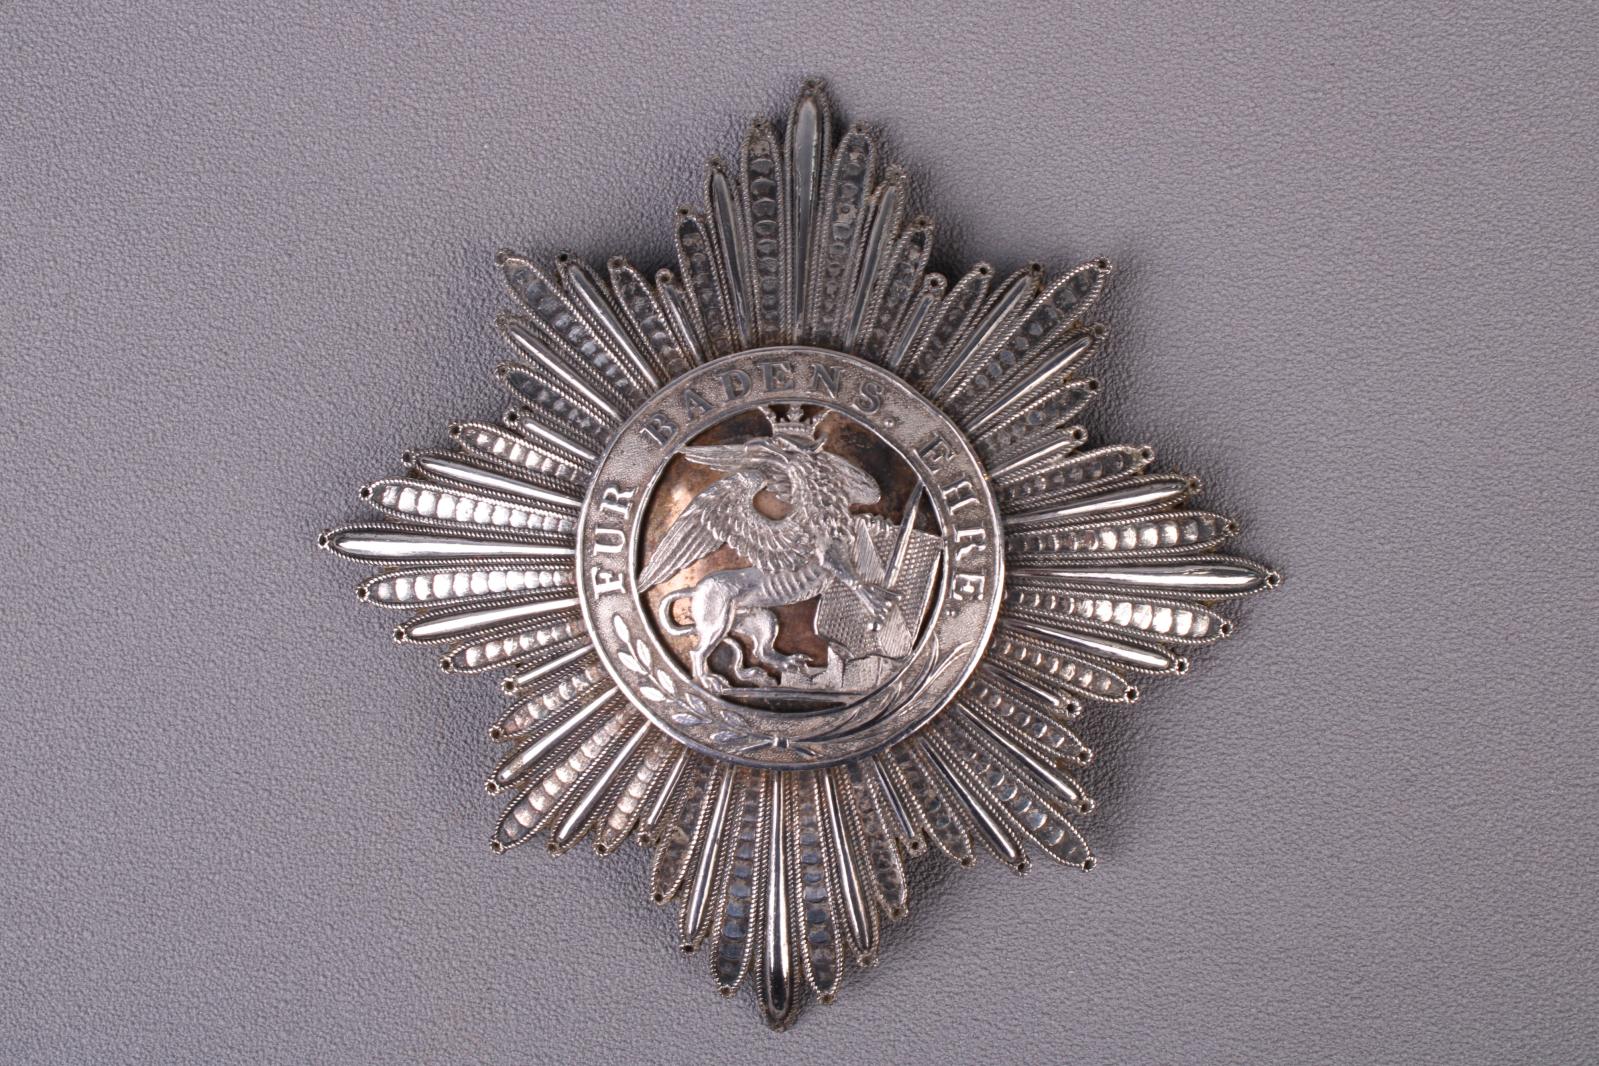 Grand-duché de Bade. Plaque de grand-croix de l’ordre du Mérite militaire Karl Friedrich, fabrication française, premier Empire, 1812. Est